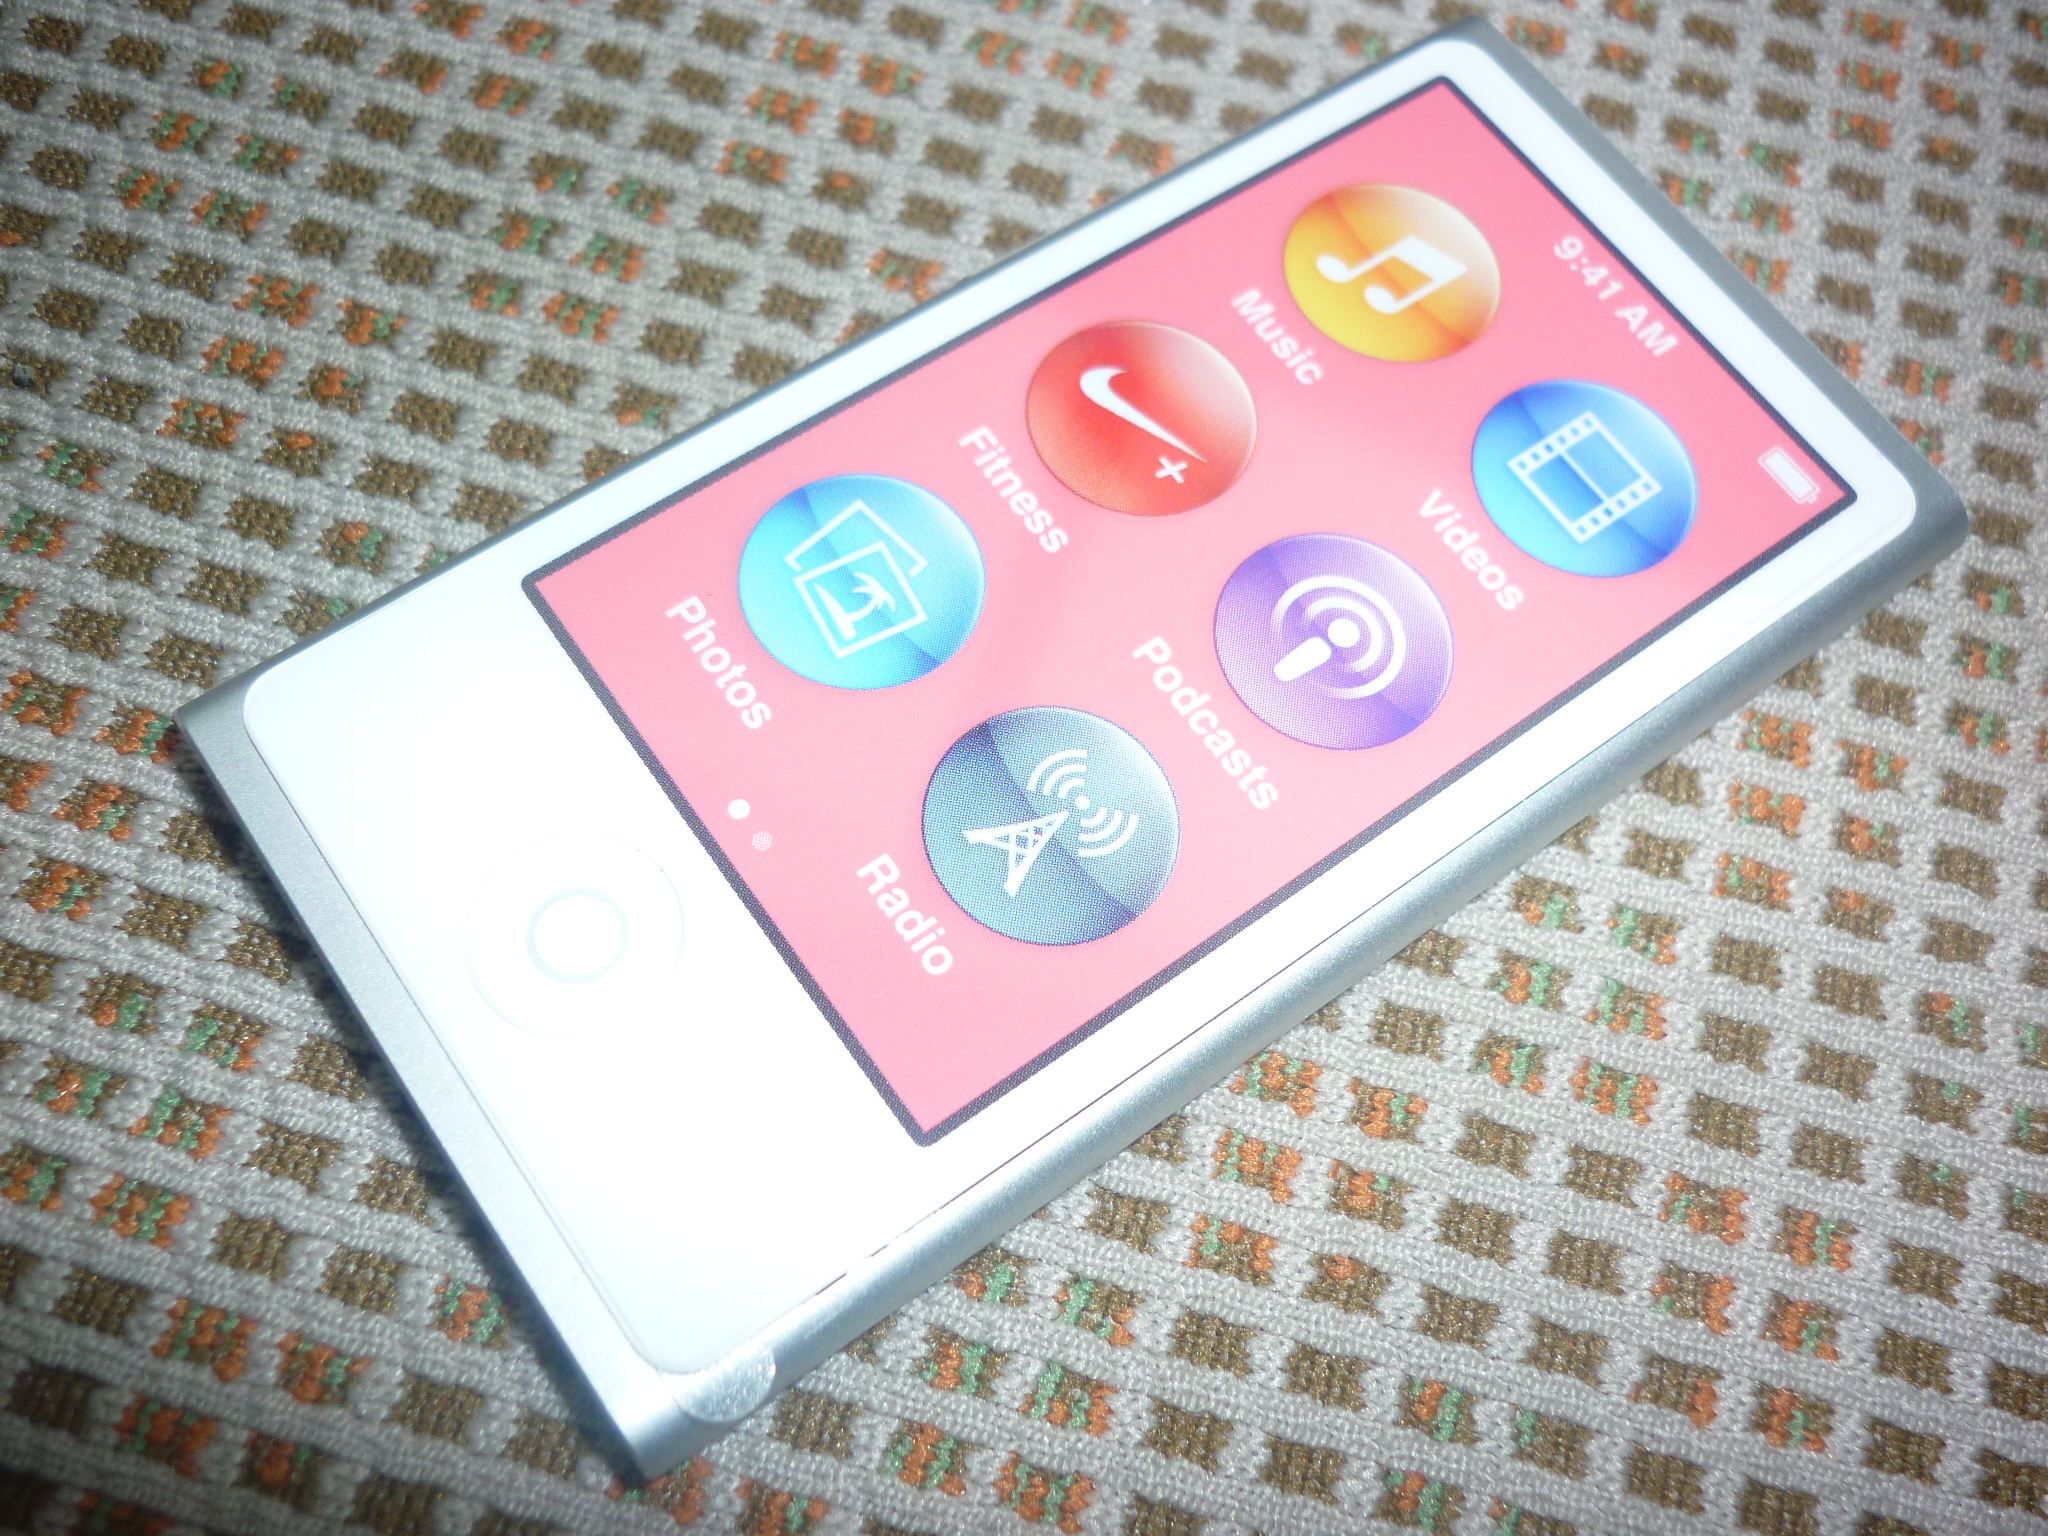 ★新品★未使用★Apple iPod nano 第7世代 16GB シルバー